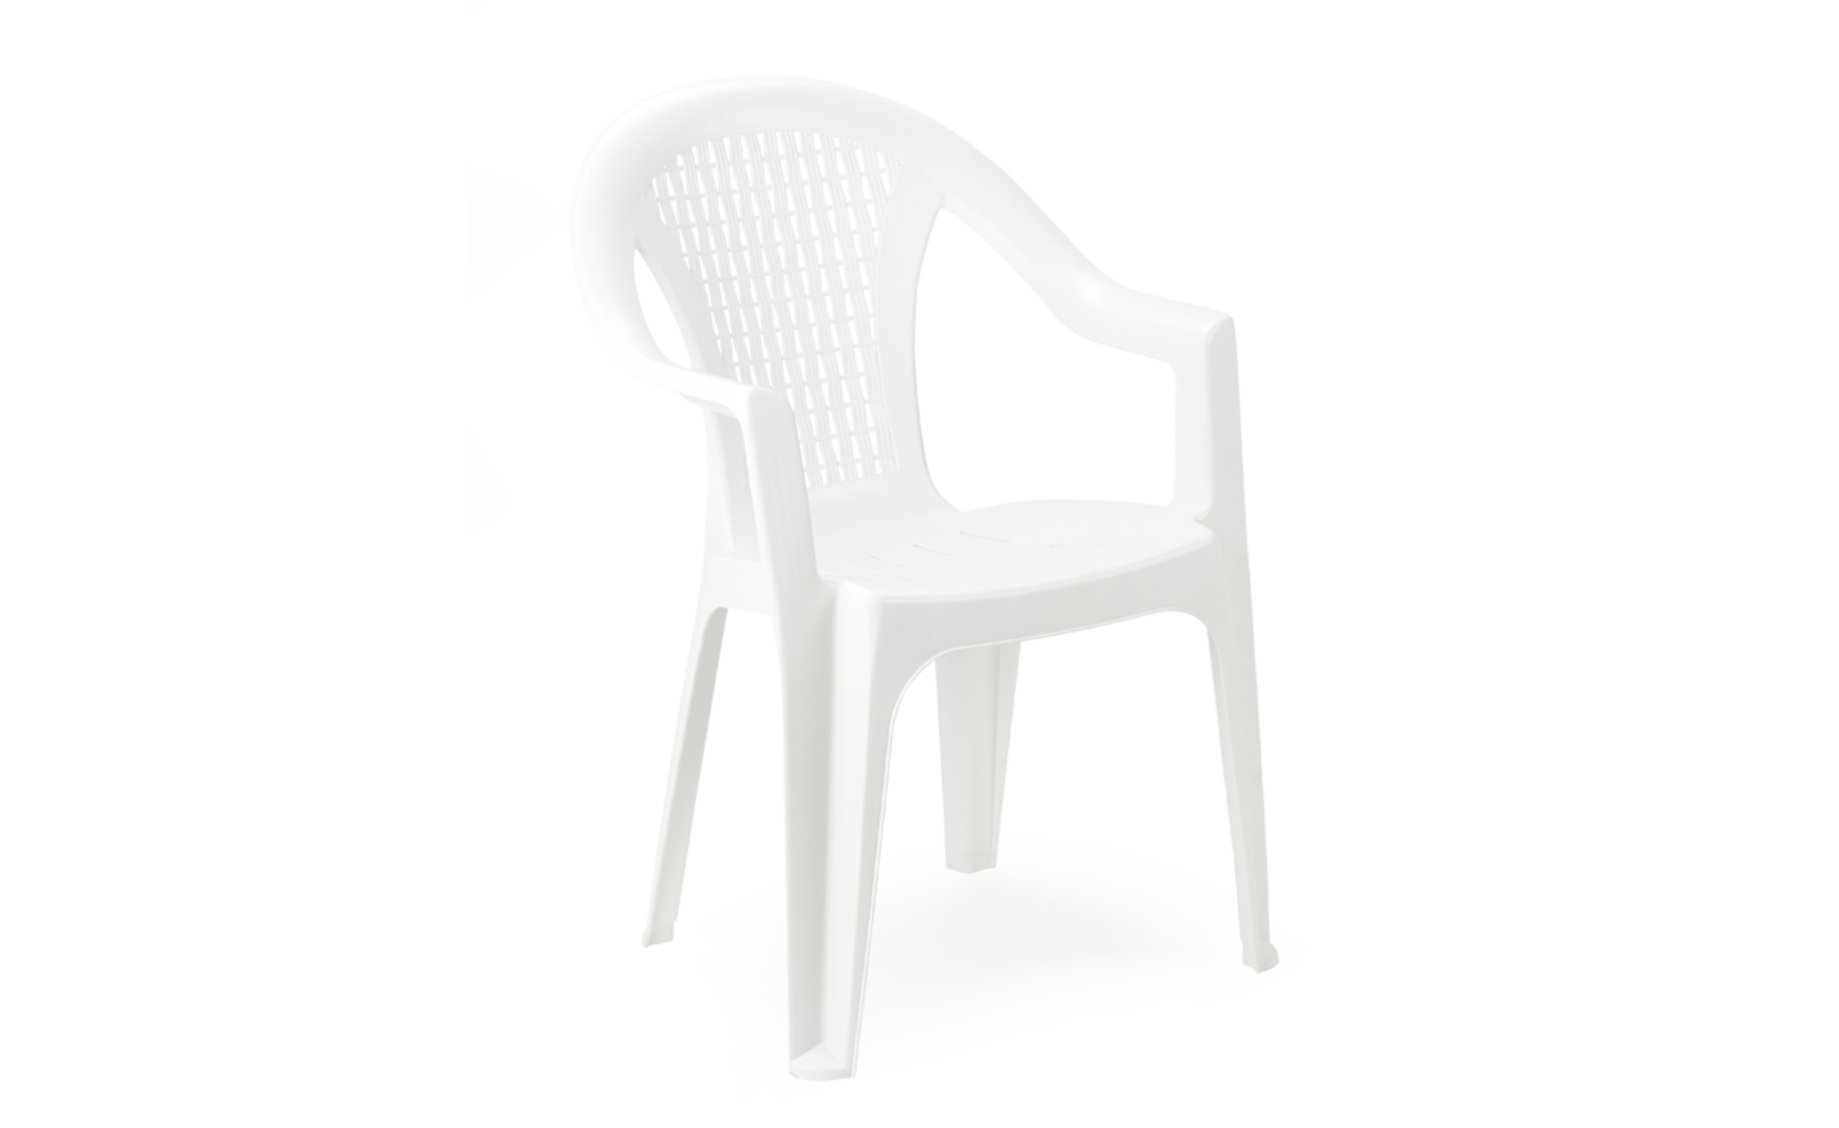 Maui plastična vrtna stolica 55x53,5x82cm bijela